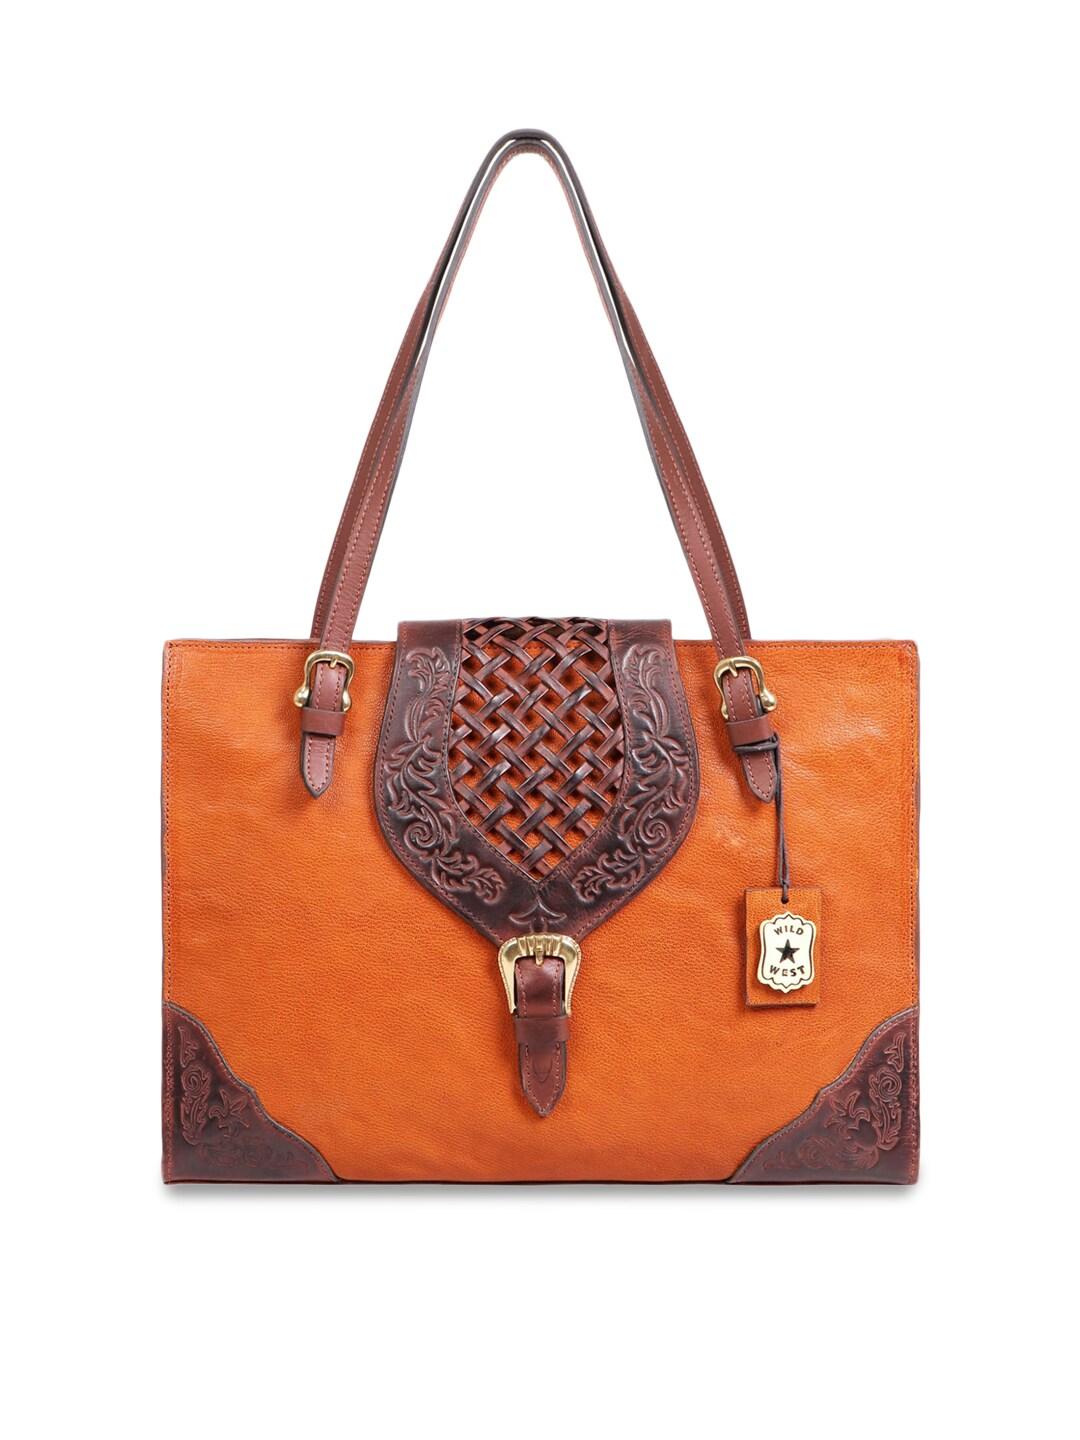 Hidesign Orange Leather Shopper Sling Bag with Applique